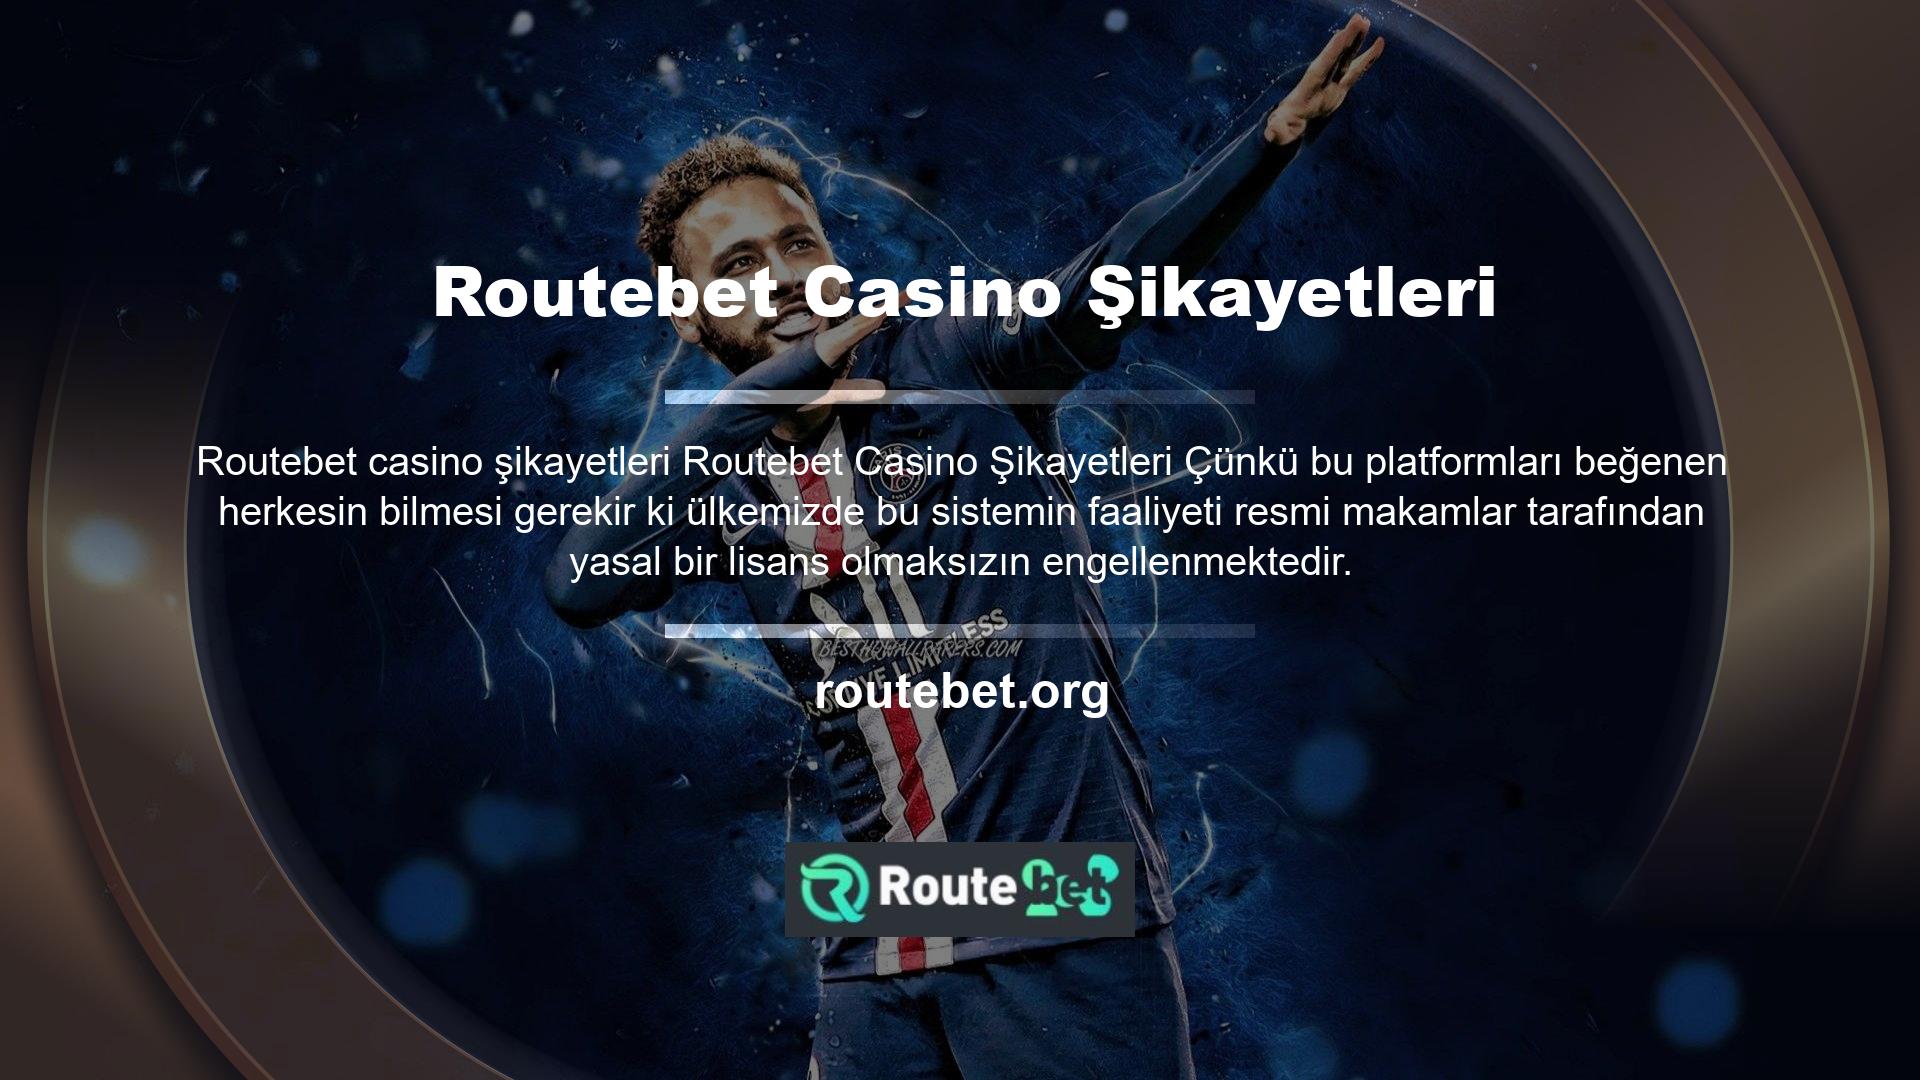 Routebet müşteri hizmetlerinin önemli bir yönü, hızlı adres güncellemeleri, şikayet analizi ve kullanıcı incelemeleridir